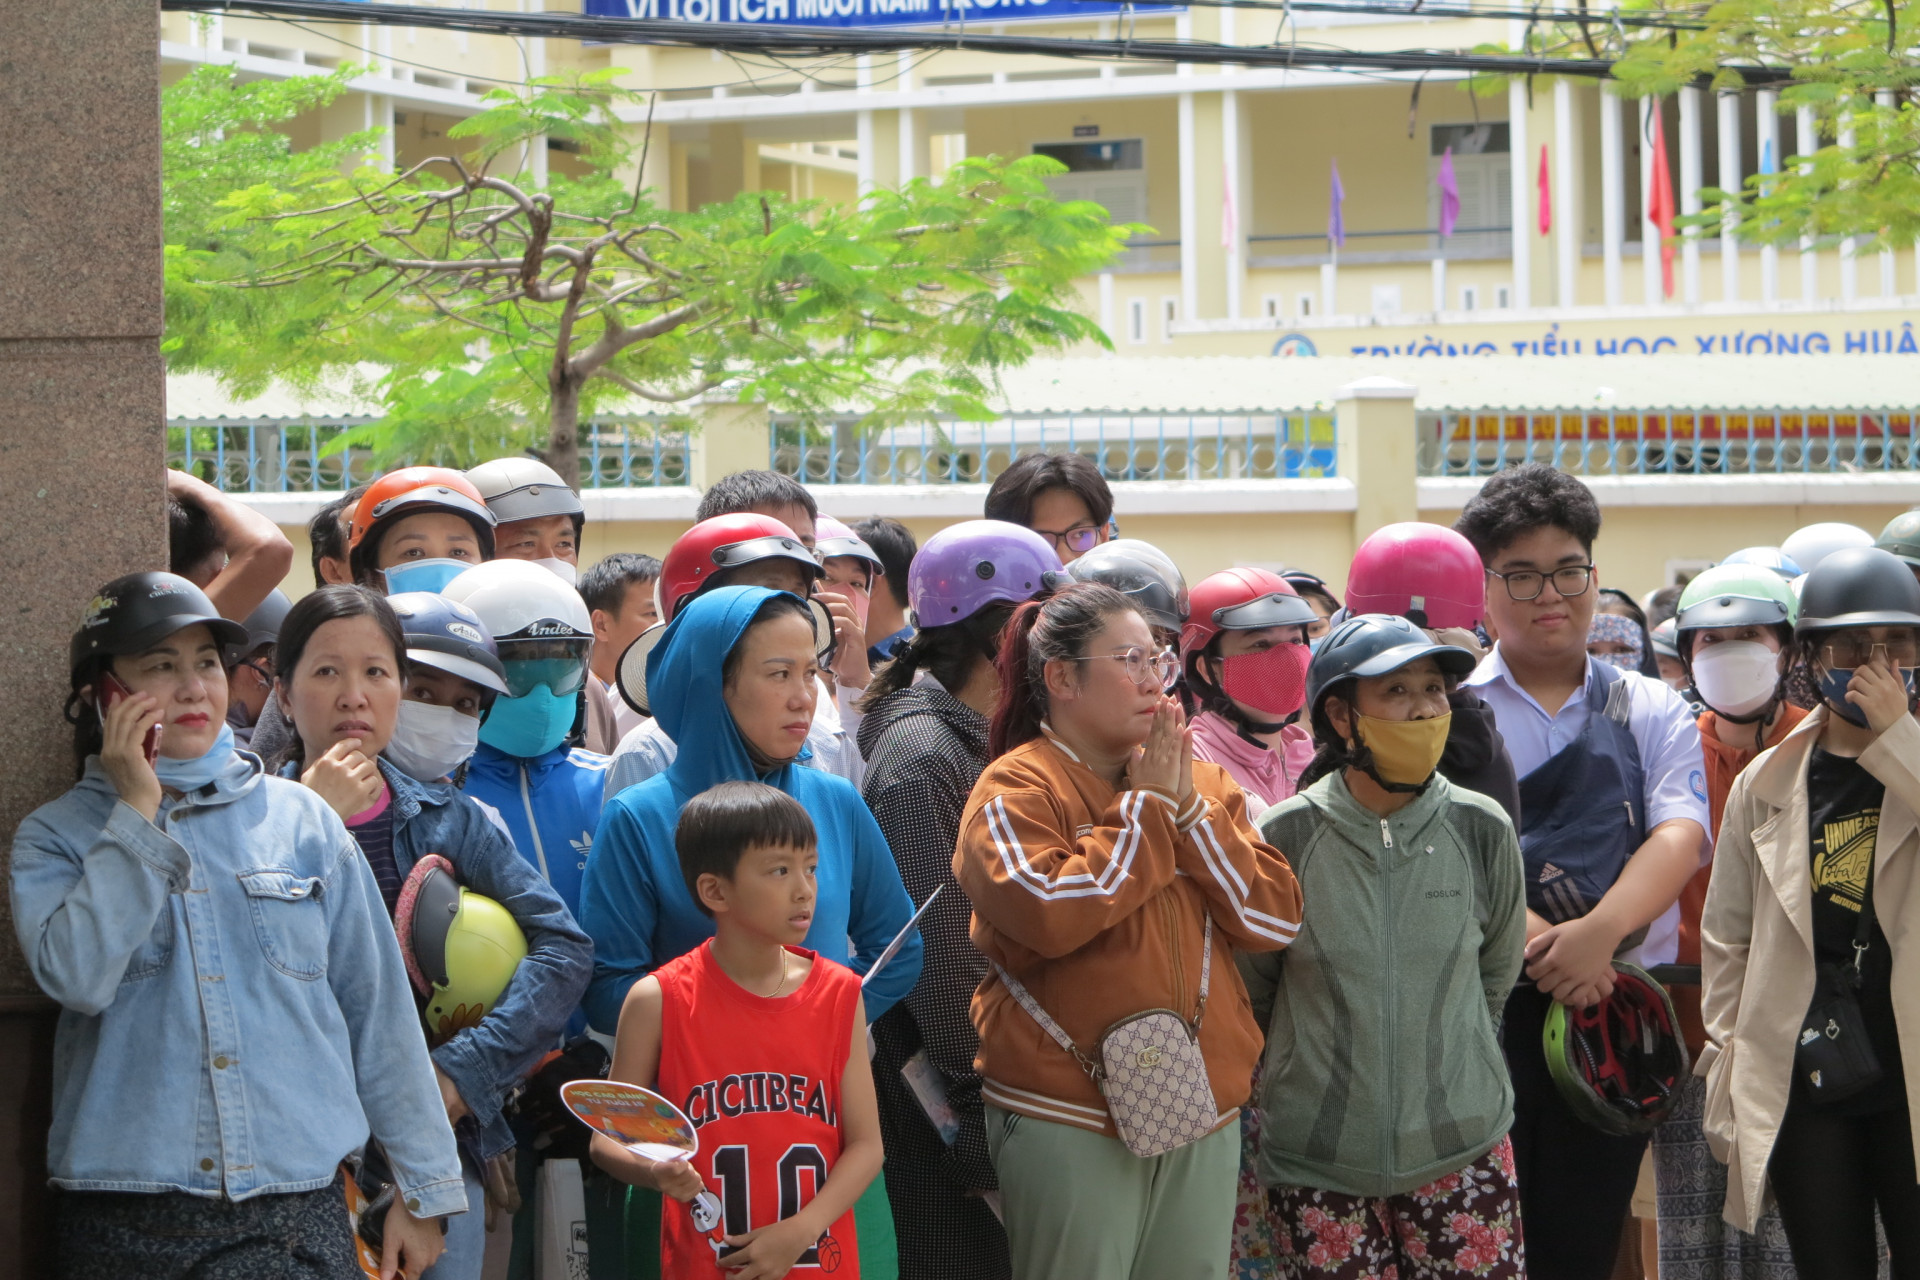 Tại Trường THPT Nguyễn Văn Trỗi (TP. Nha Trang), nhiều phụ huynh đã chờ từ sớm để đón con sau buổi thi Ngữ văn. 